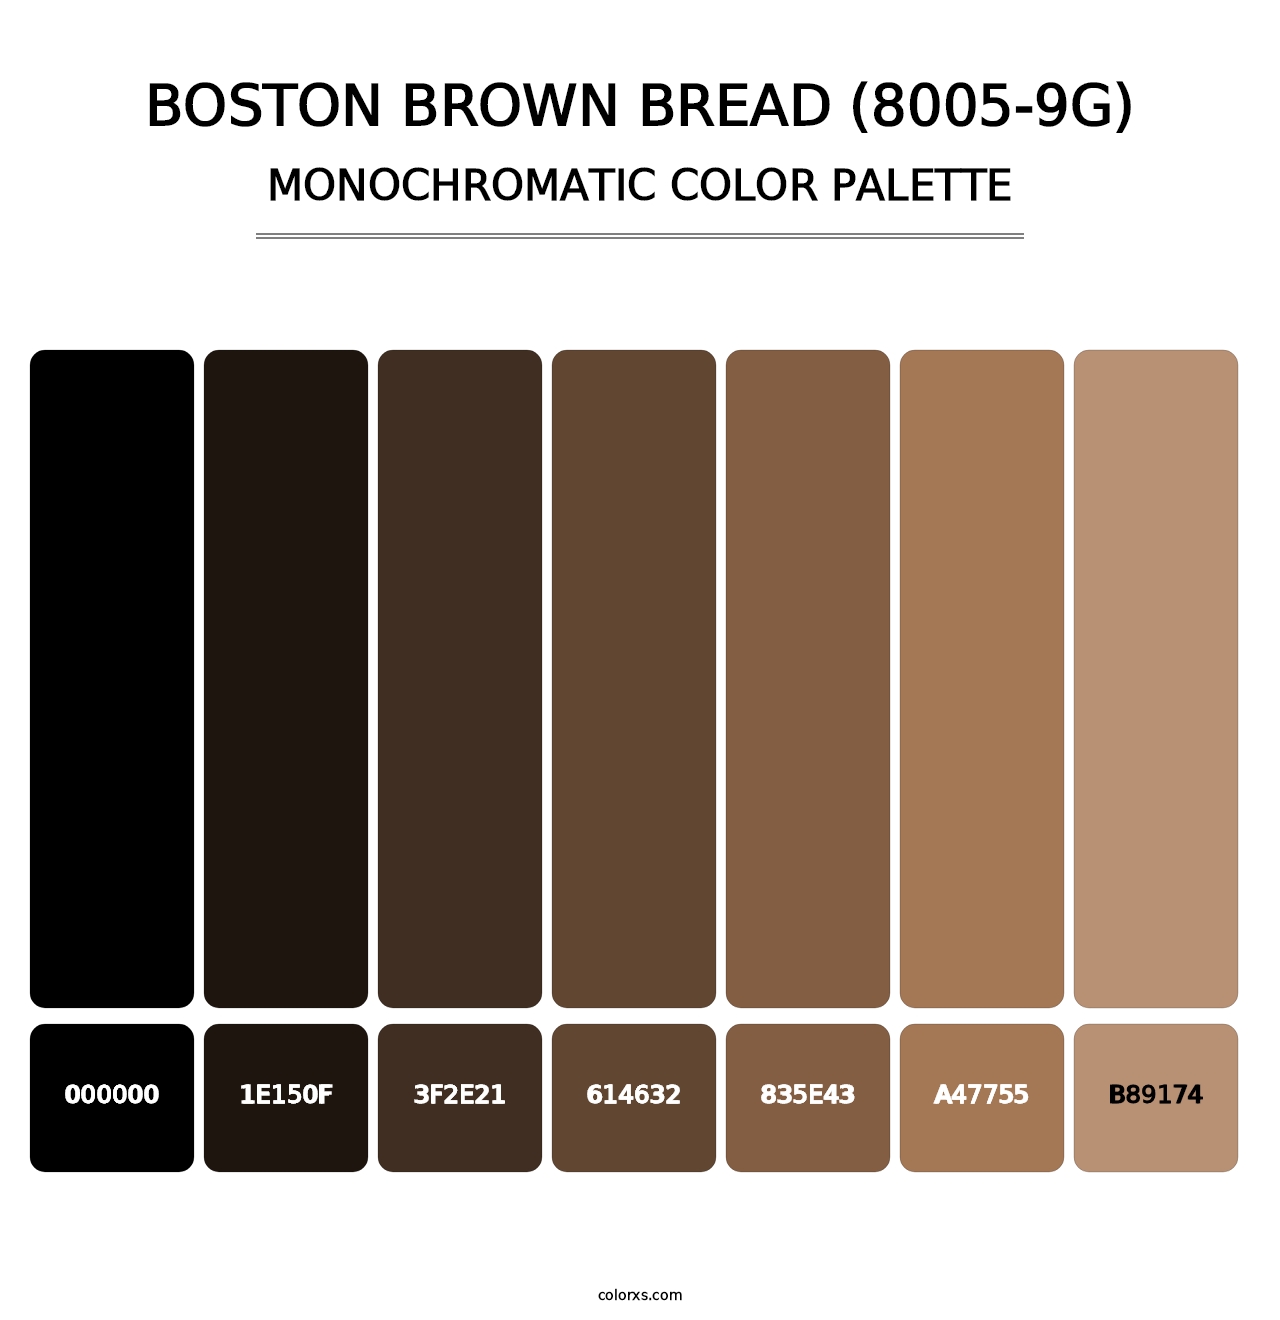 Boston Brown Bread (8005-9G) - Monochromatic Color Palette